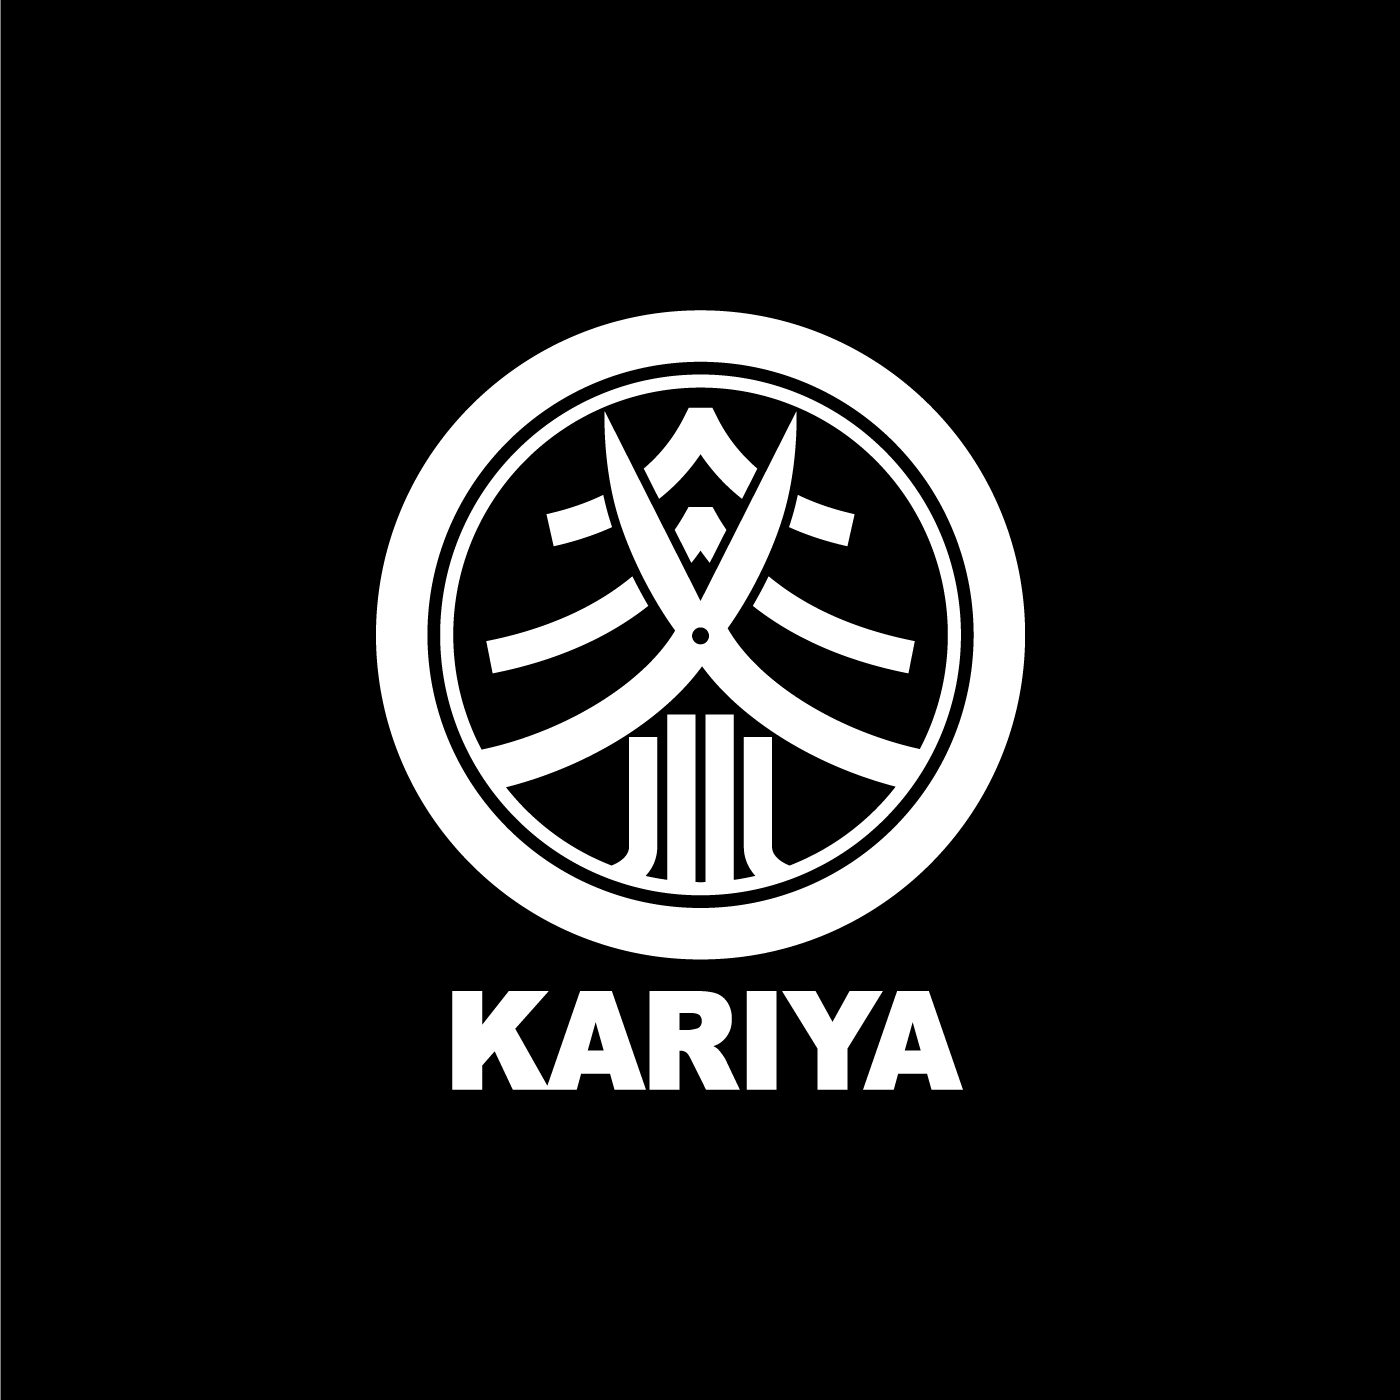 kariya_logo1